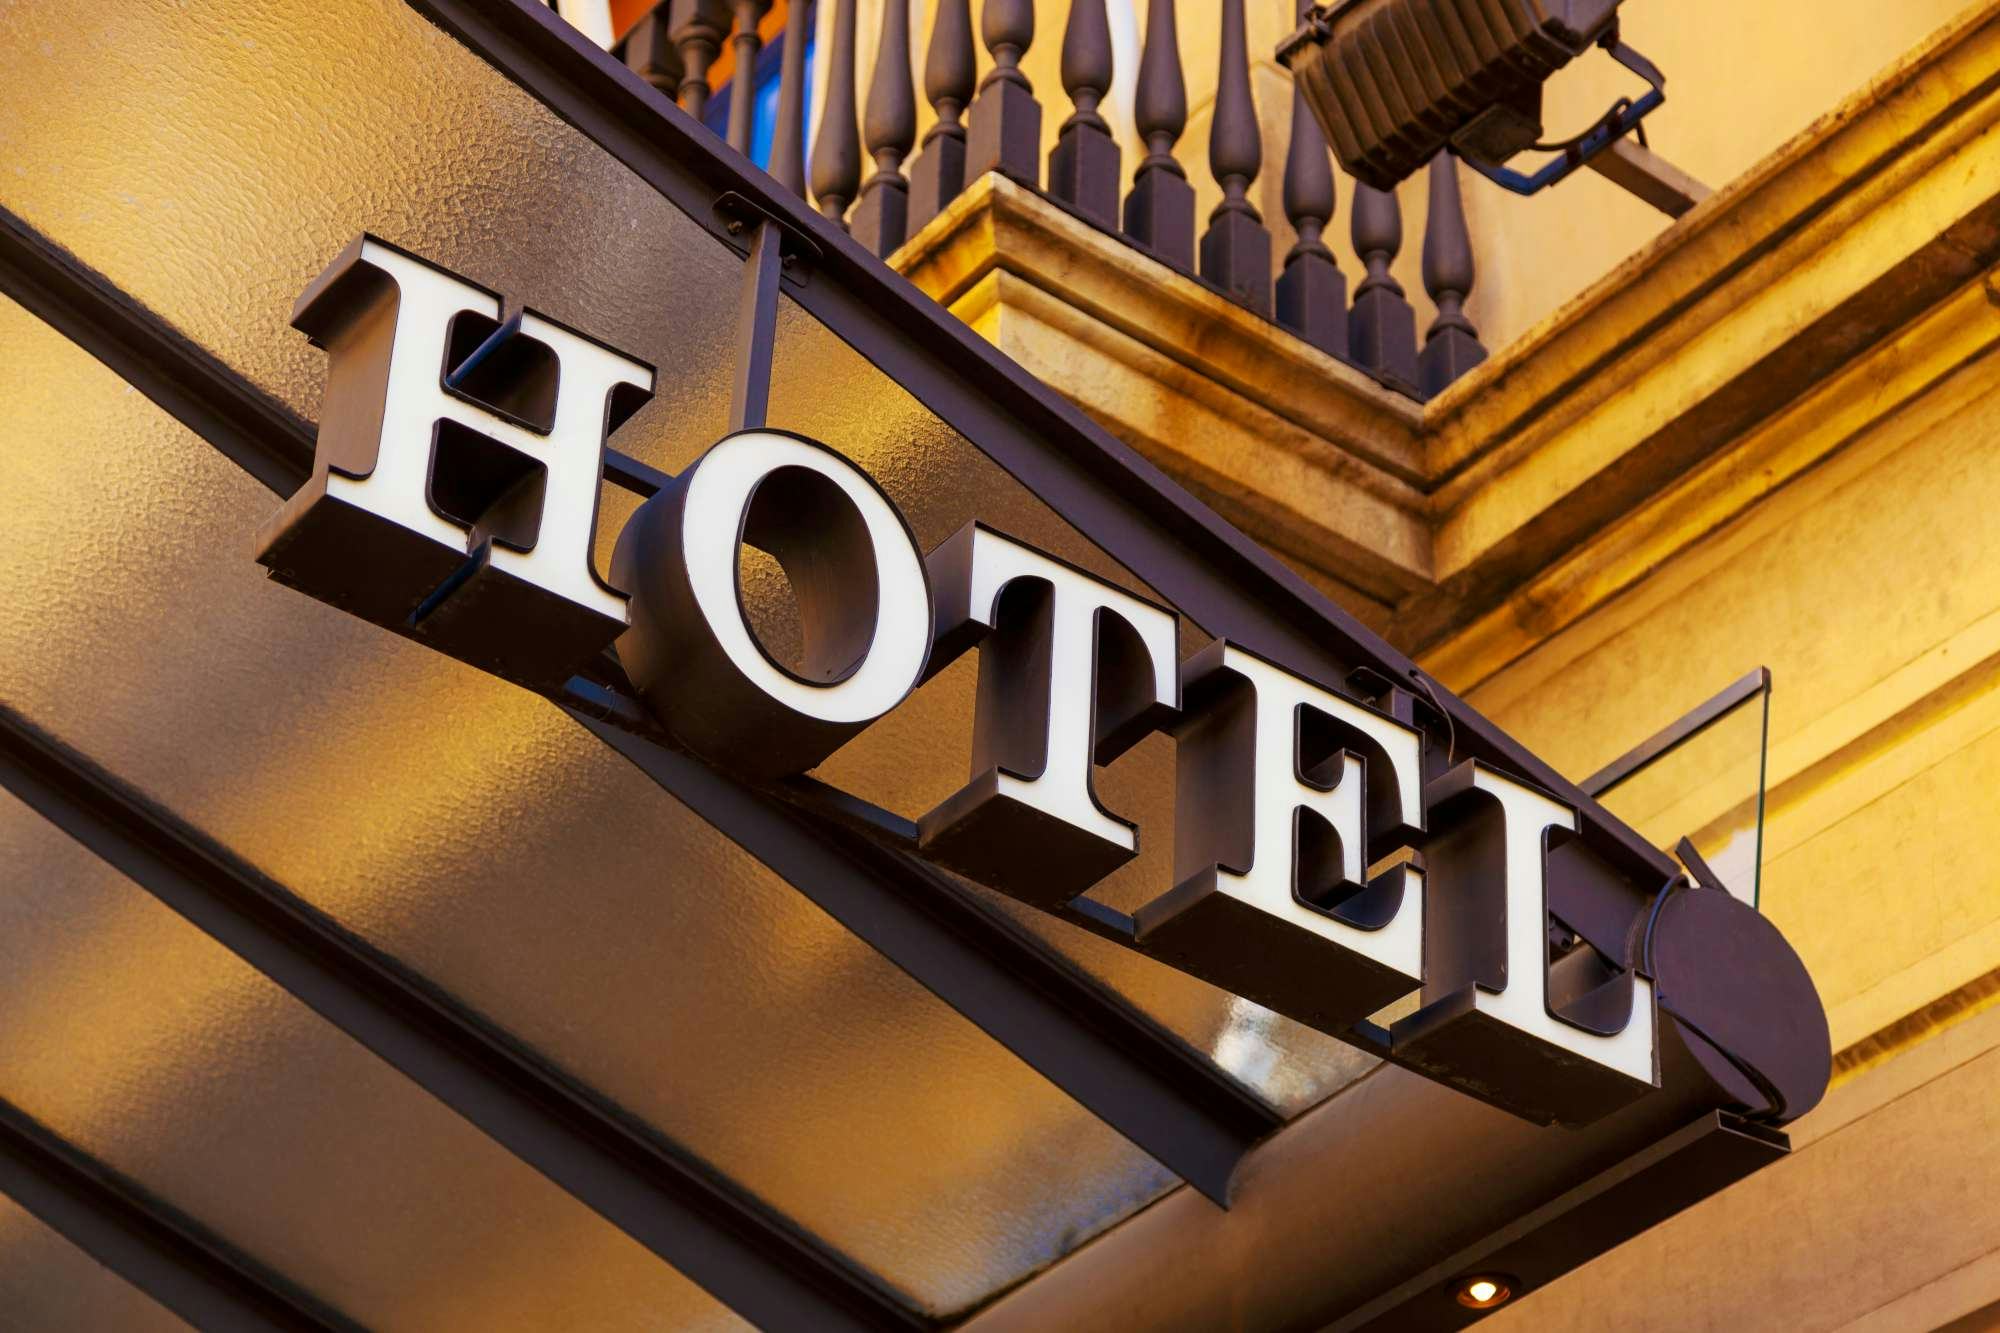 'Hotelsector moet zich nu alvast voorbereiden op een volgende crisis'